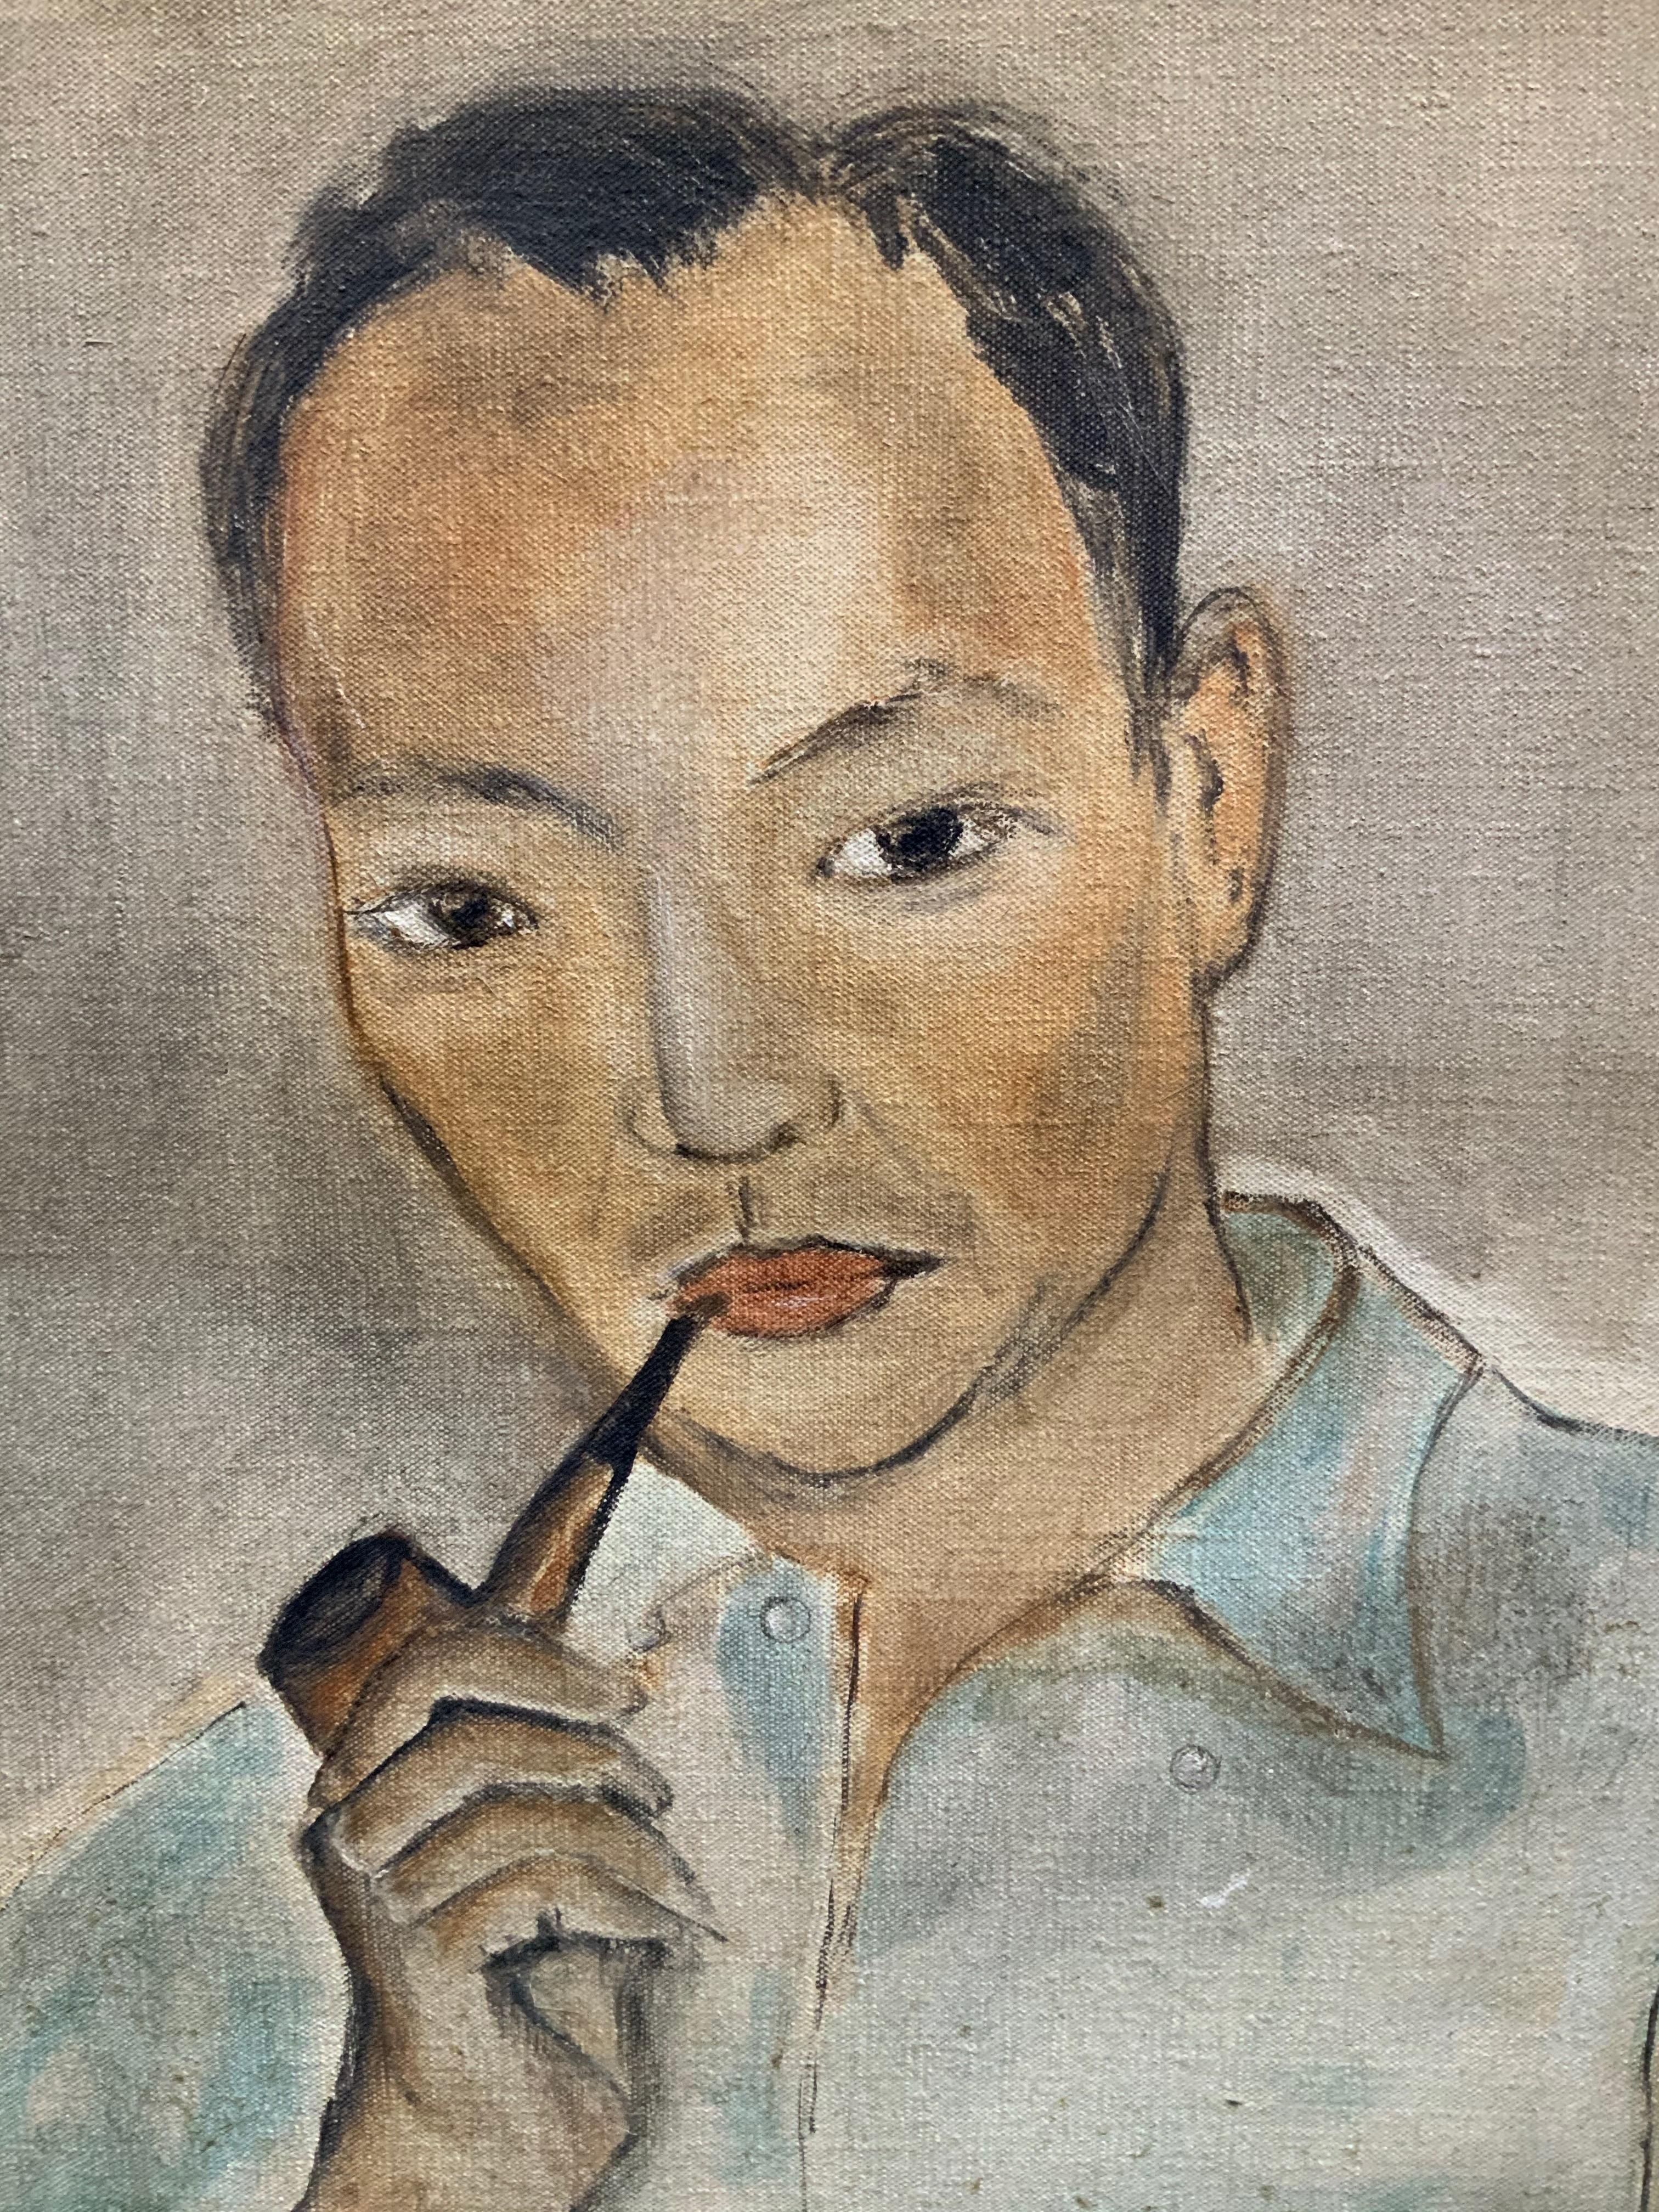 American Early Portrait Painting of Yasuo Kuniyoshi